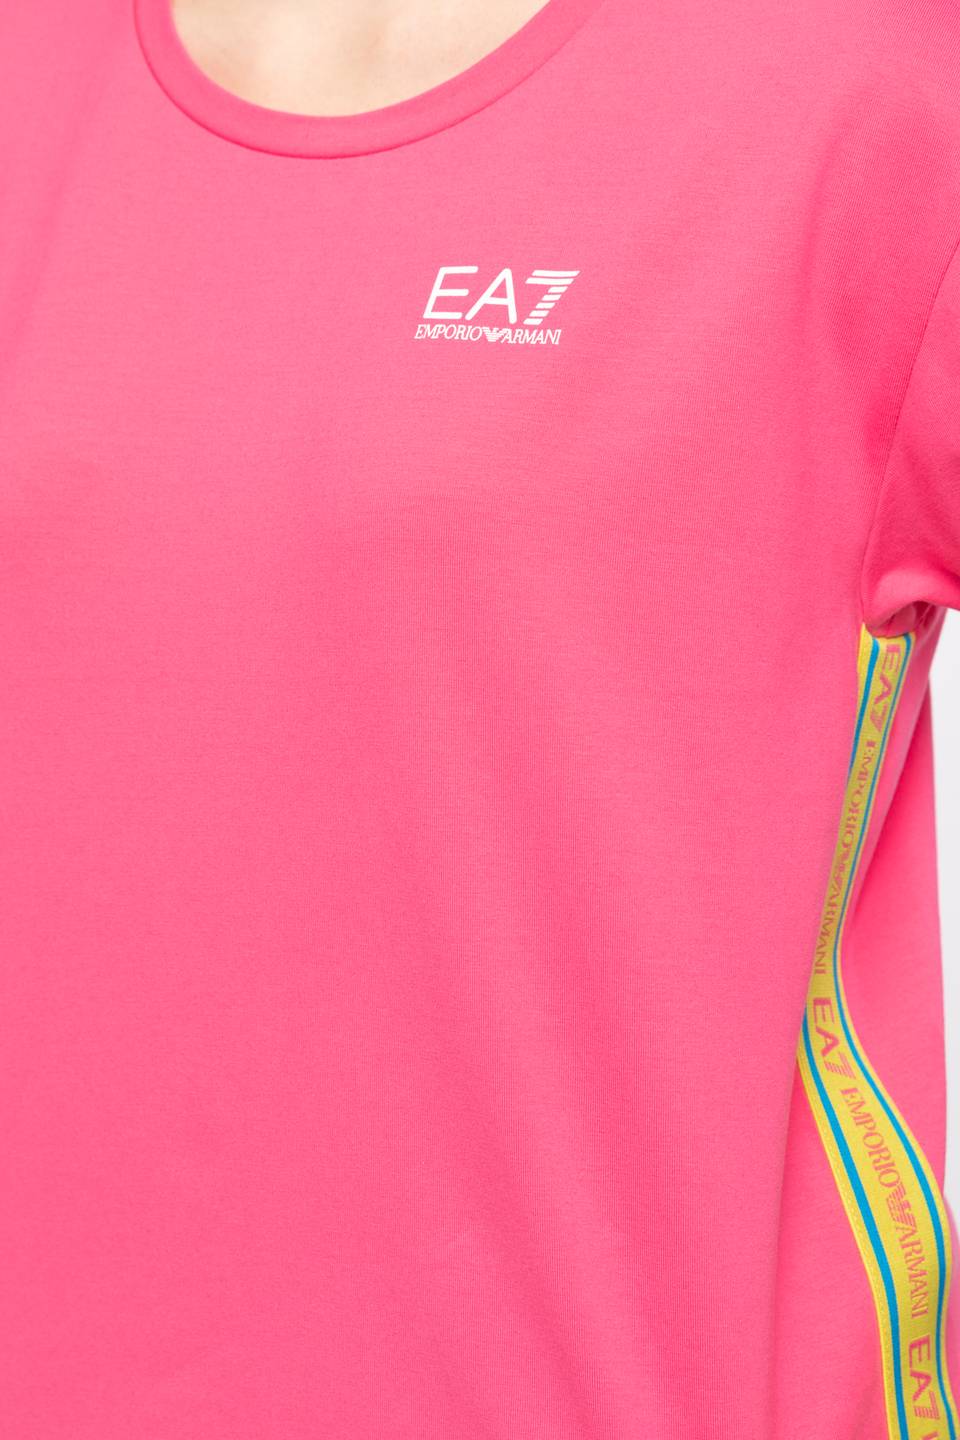 Koszulka EA7 Emporio Armani Z KRÓTKIM RĘKAWEM T-SHIRT 3KTT21TJ29Z-1405